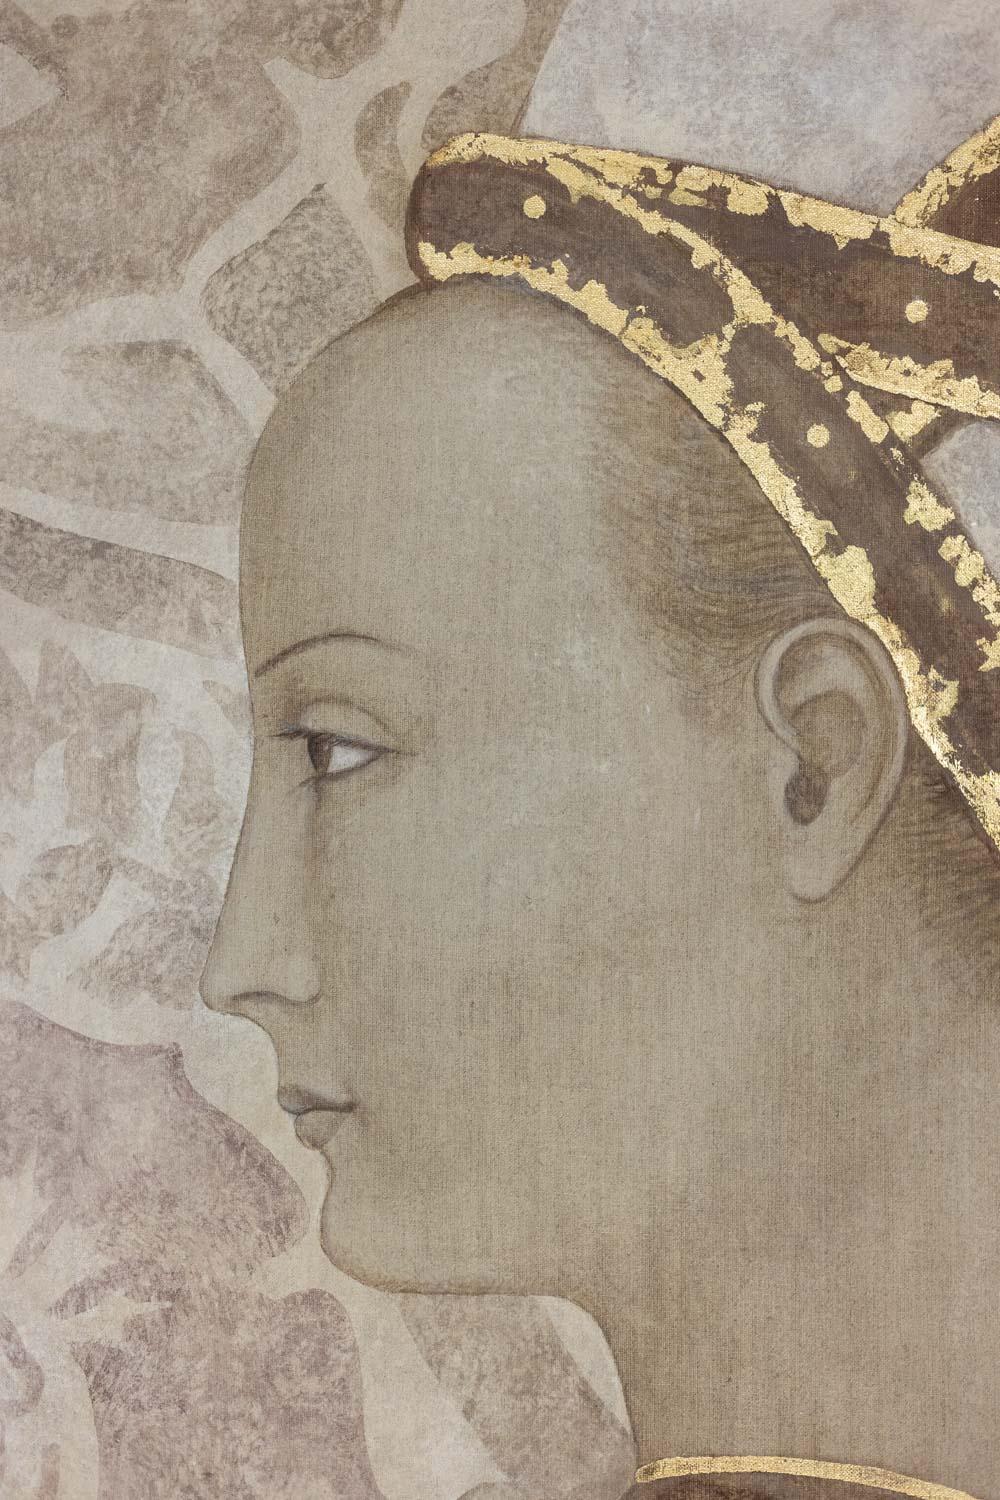 Toile peinte, ou panneau décoratif, de style Renaissance, représentant une femme noble, avec sa coiffe et son manteau dans les tons or et chocolat sur un fond à motifs dans les tons beiges.

Travail d'artistes français contemporains.